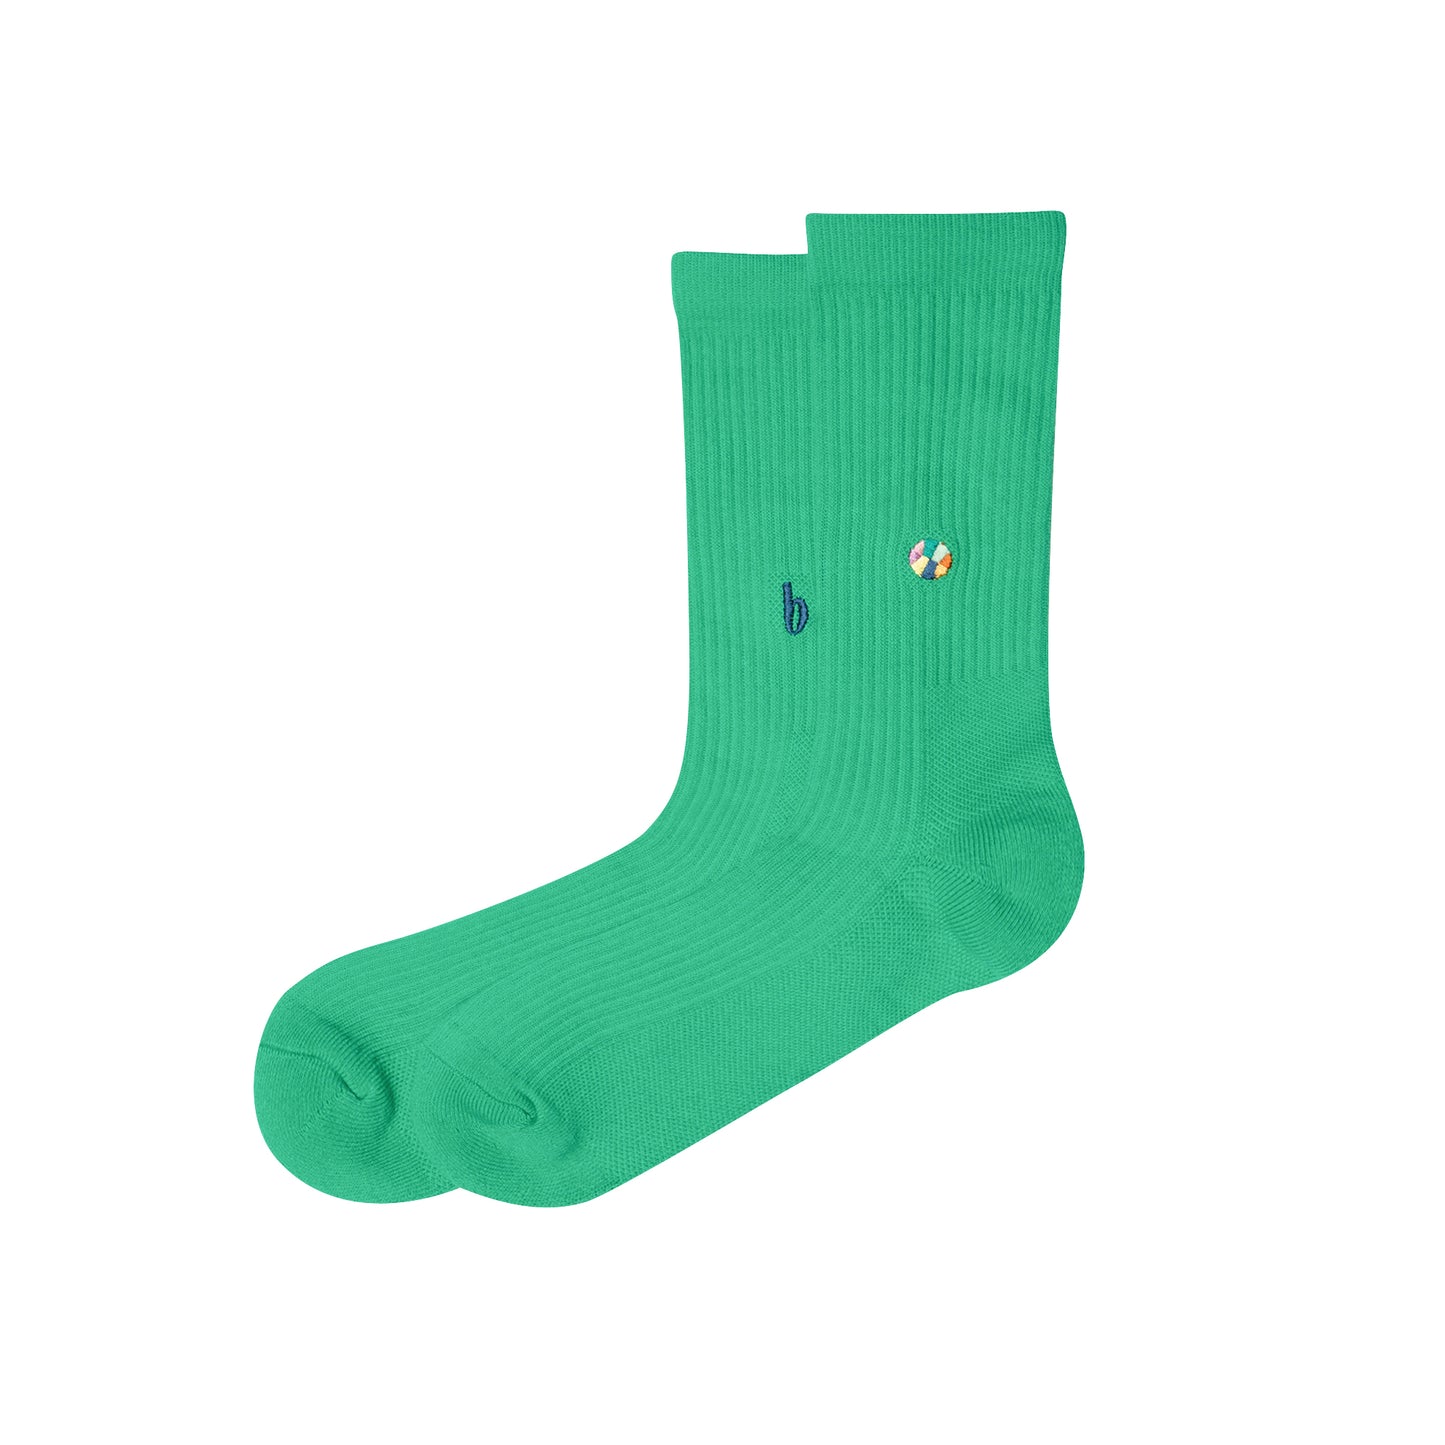 b 2-Pack Socks (white , green)